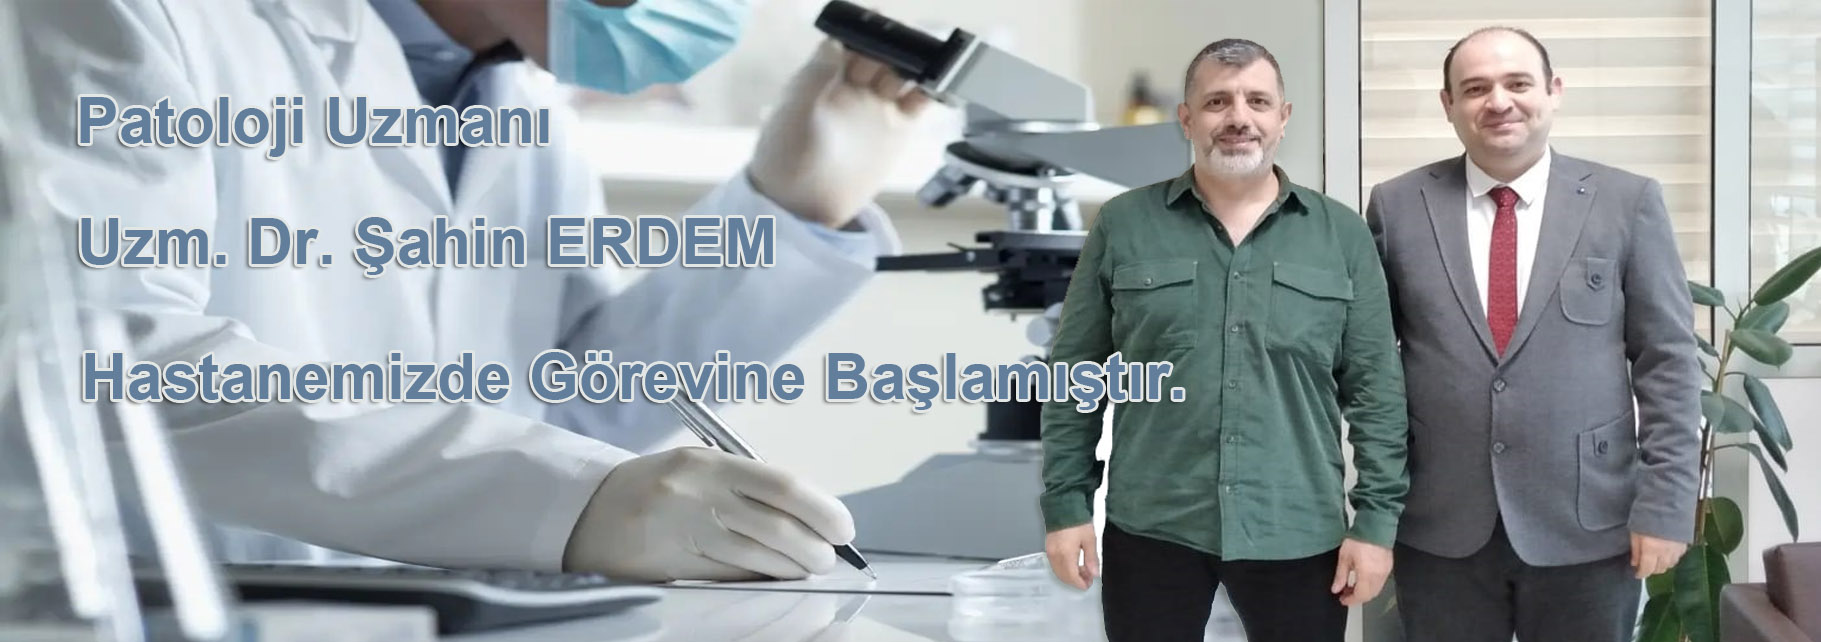 Patoloji Uzmanı Dr. Şahin ERDEM Hastanemizde Görevine Başlamıştır.